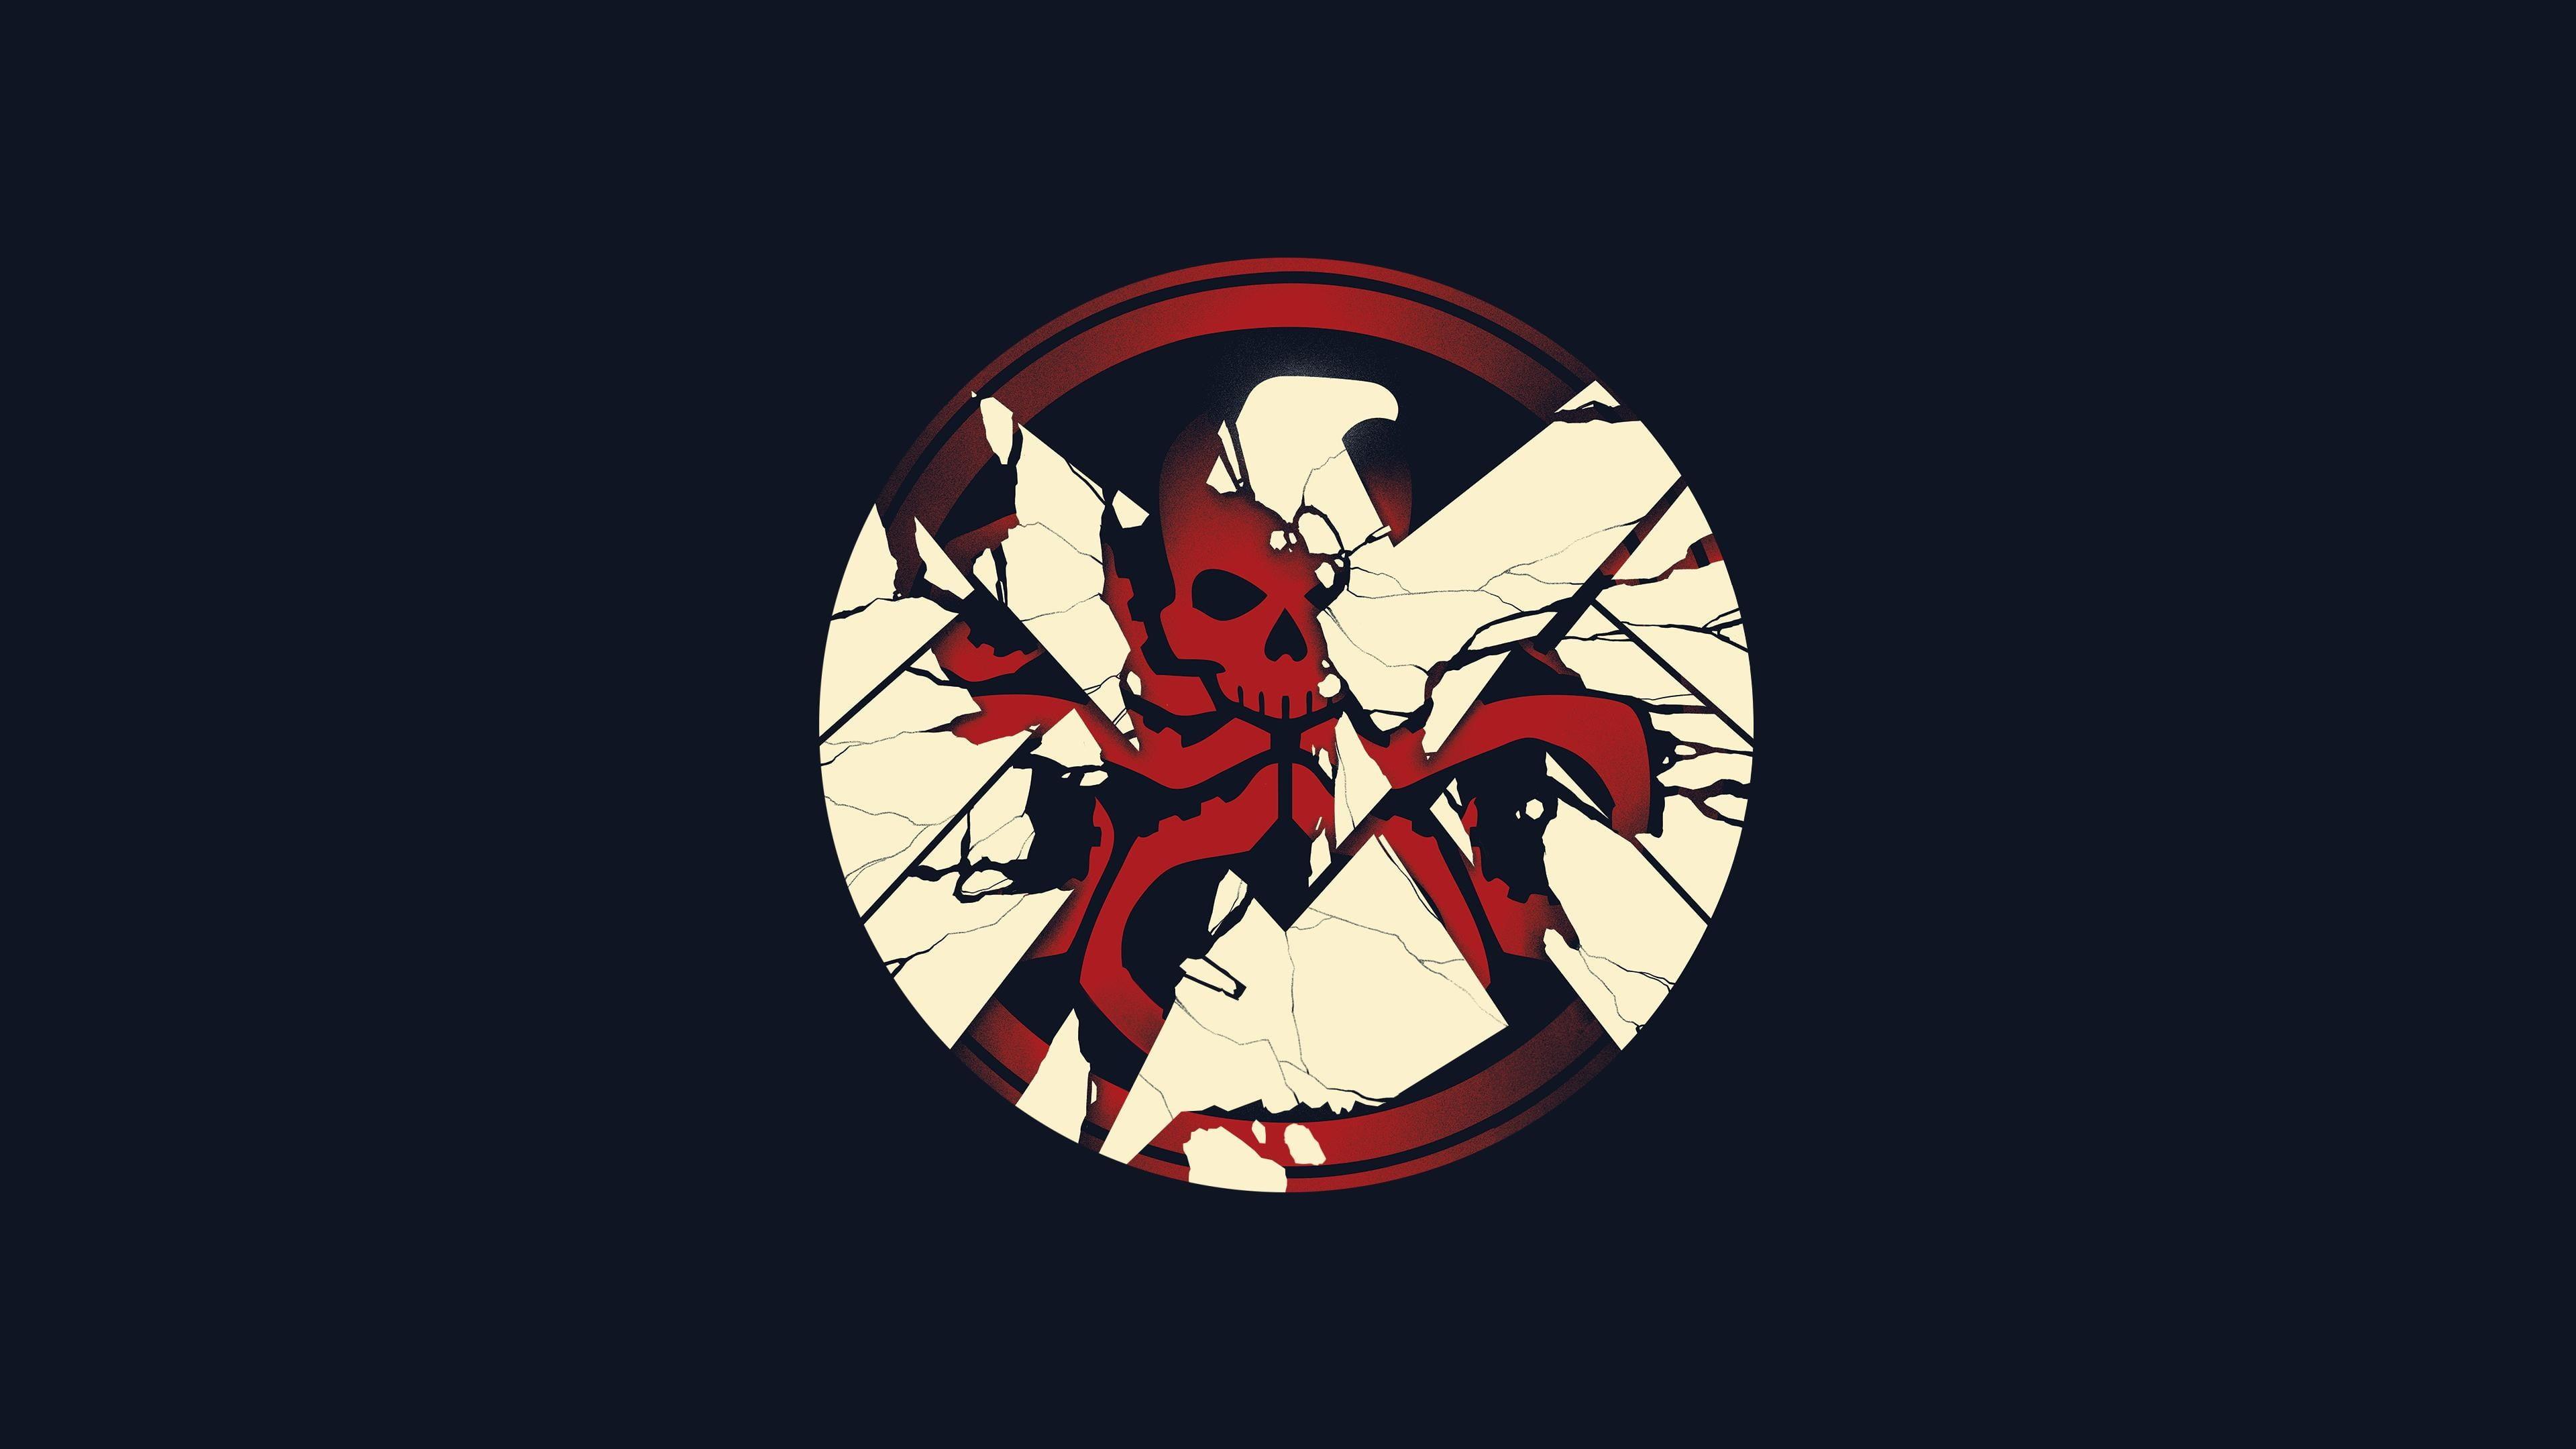 Red skull logo HD wallpaper